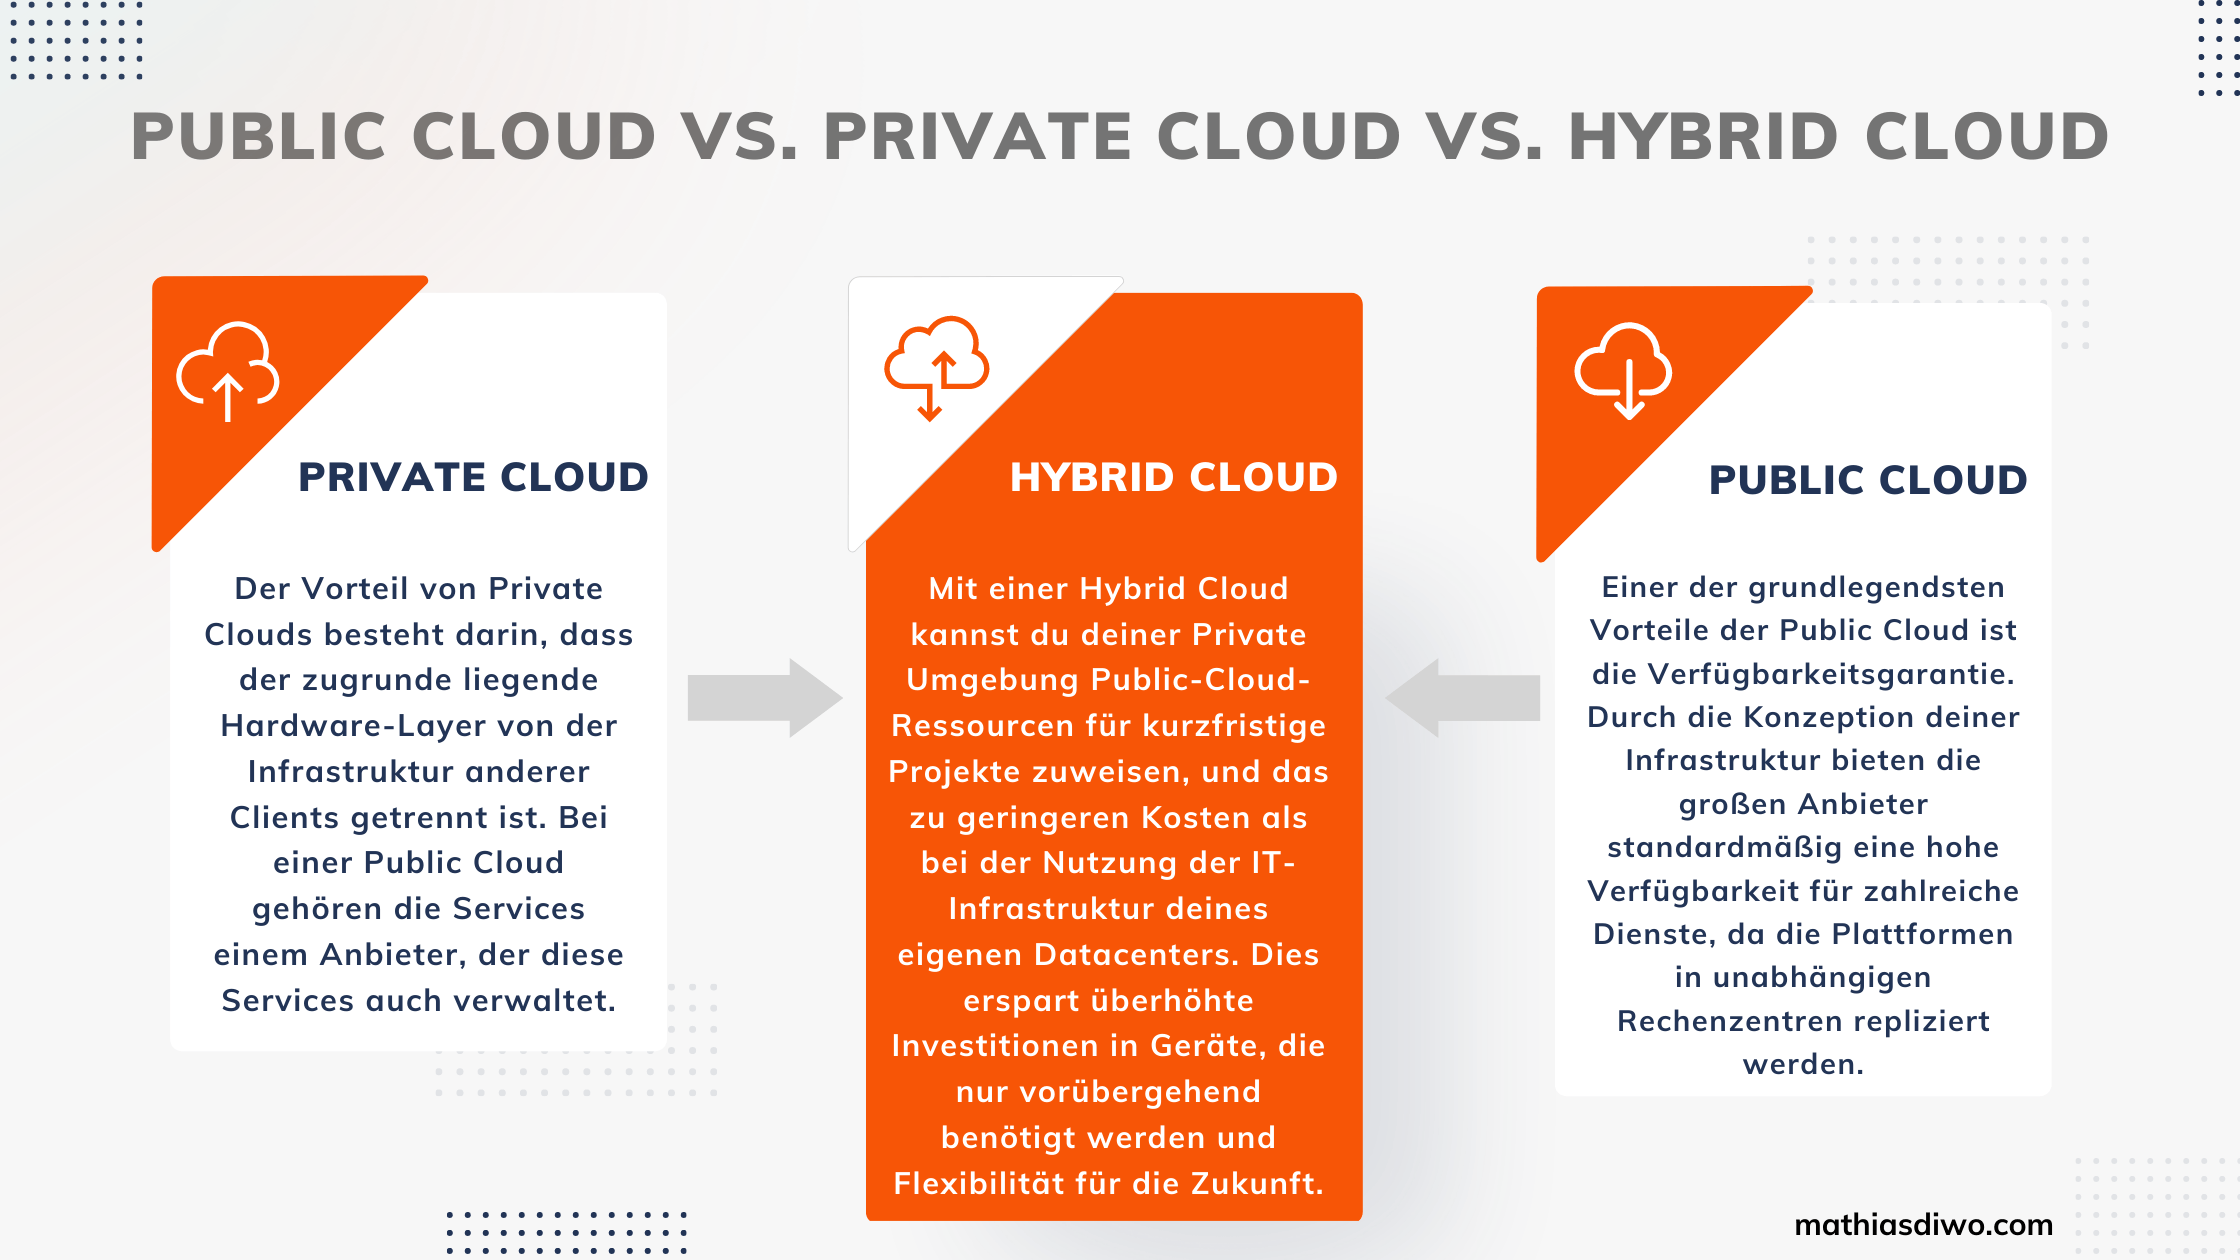 Cloud Computing Modelle - Public Cloud vs. Private Cloud vs. Hybrid Cloud